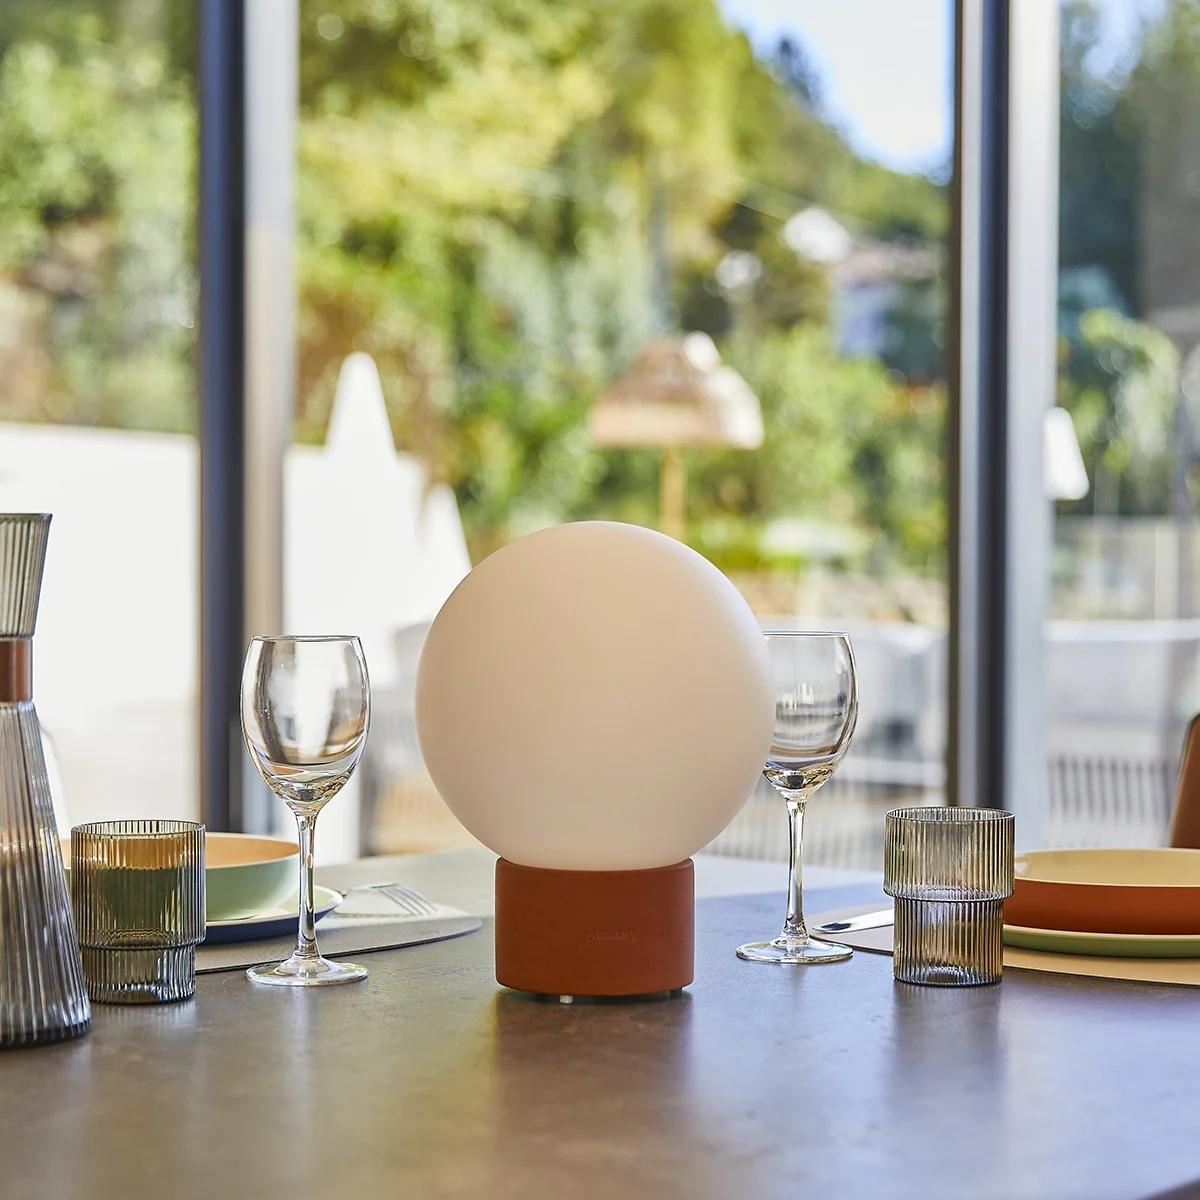 Lampe de table touch effet beton orange LED TERRA TERRE CUITE h 25 cm